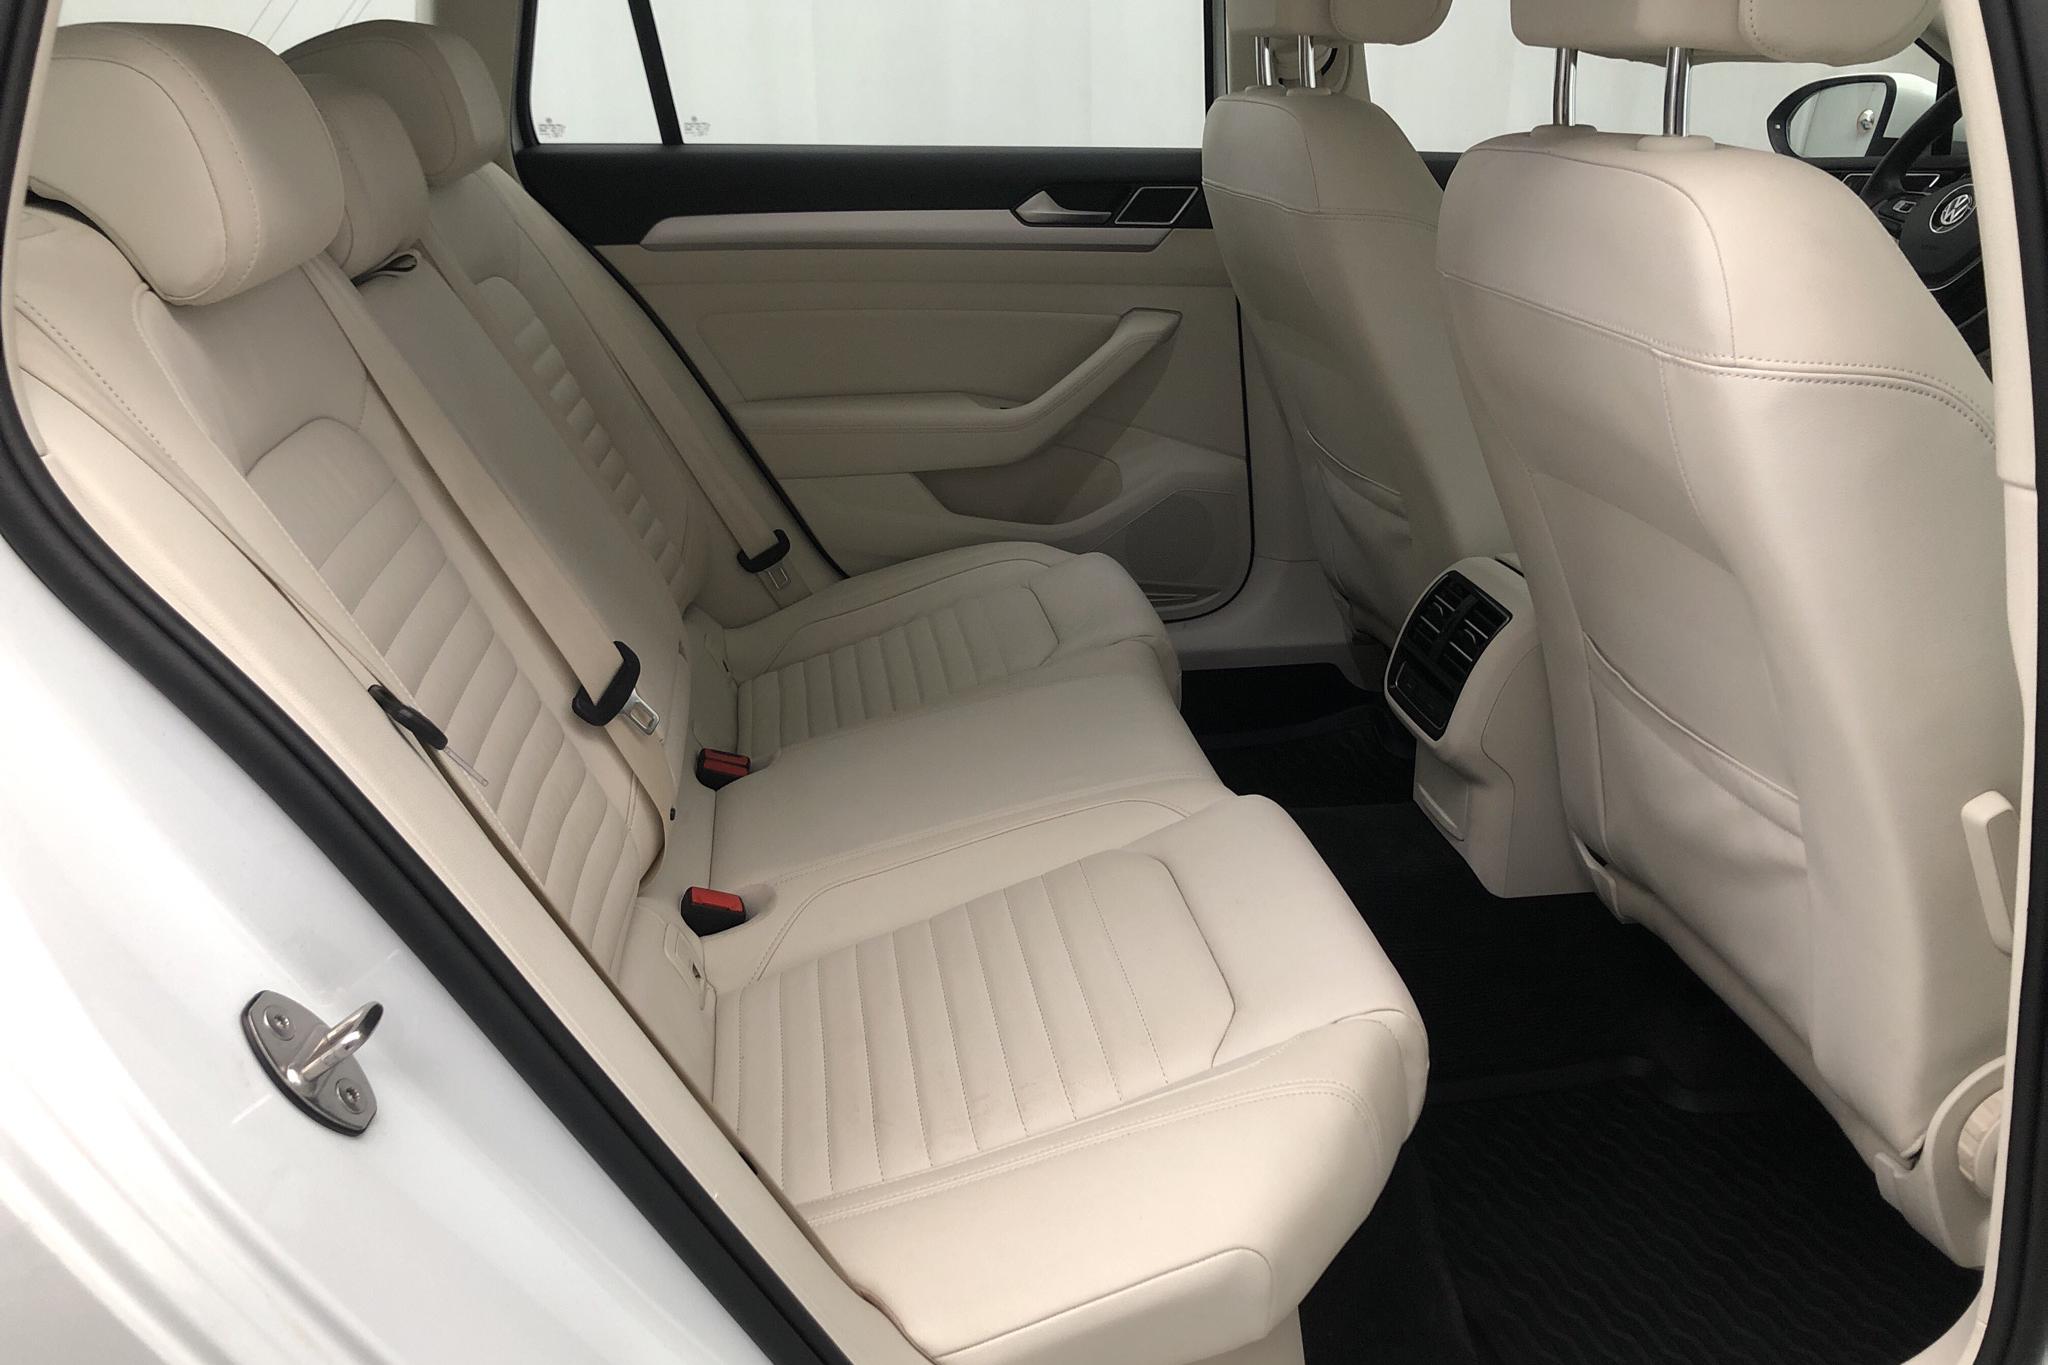 VW Passat 2.0 TDI Sportscombi (150hk) - 8 767 mil - Automat - vit - 2018